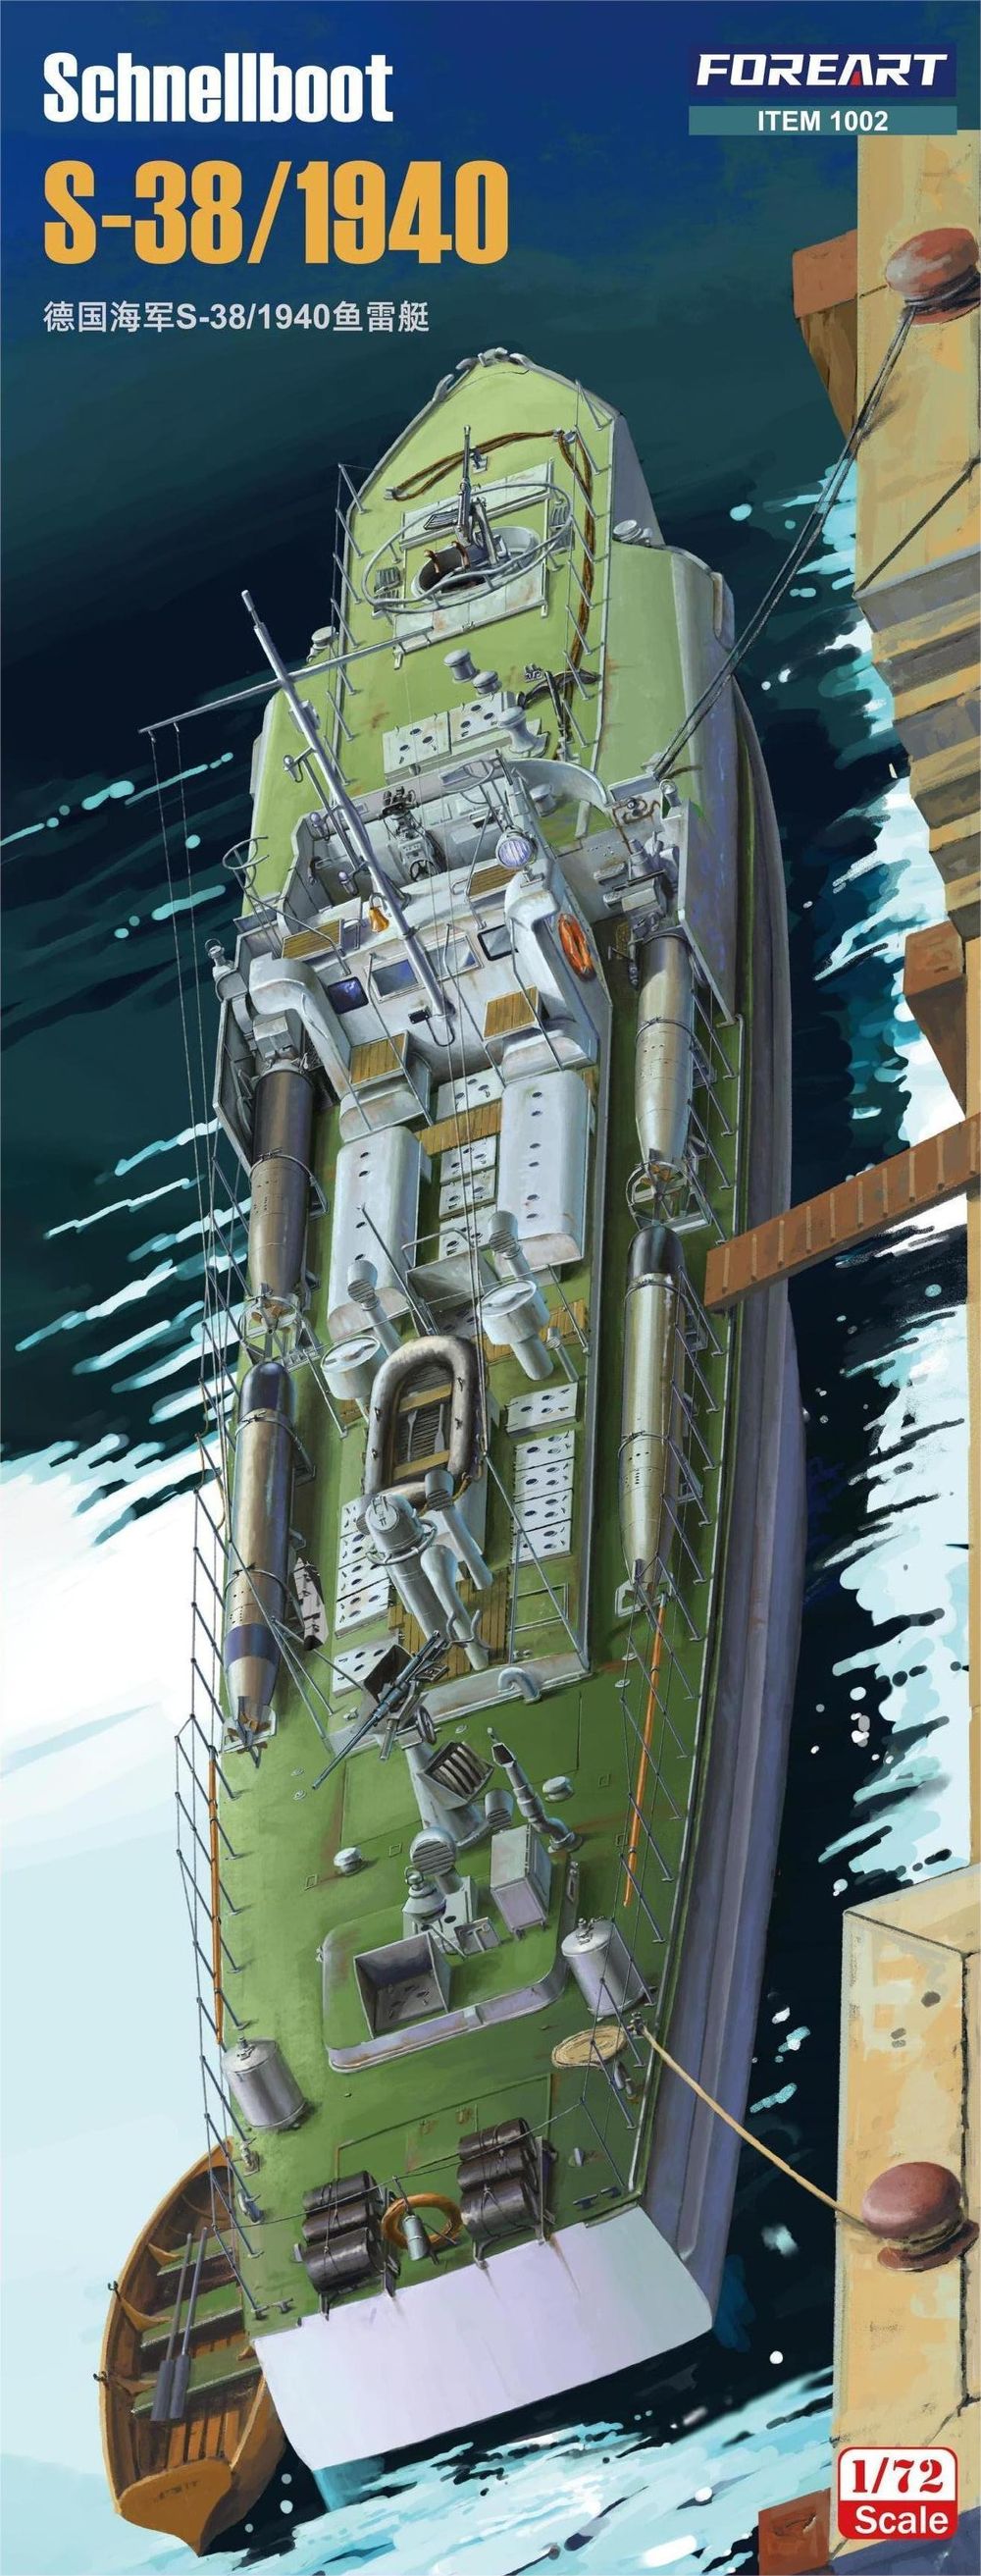 海光模型 FORE 拼装舰船 1002 S38级鱼雷艇1940年型 1/72